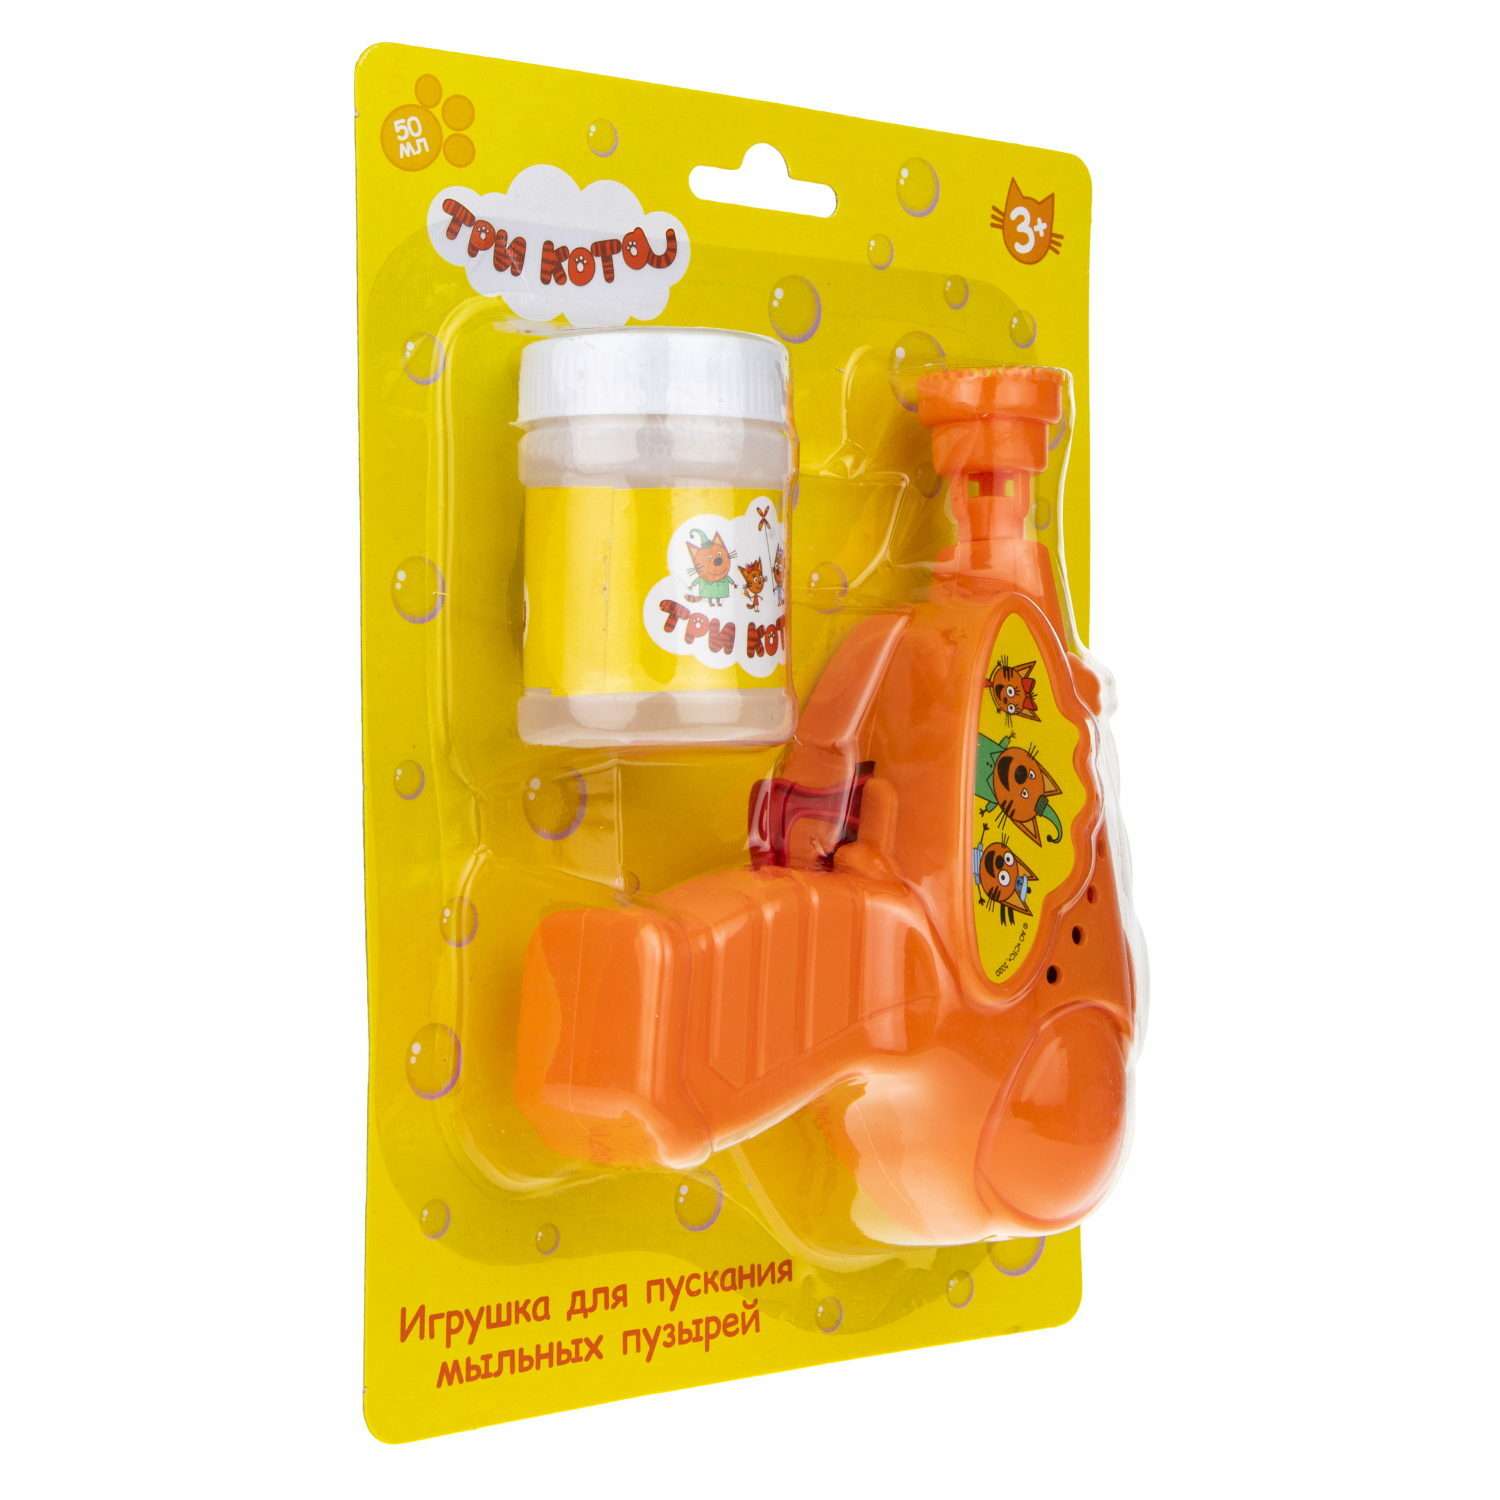 Генератор мыльных пузырей Три кота 1YOY с раствором пистолет бластер аппарат детские игрушки для улицы и дома - фото 4